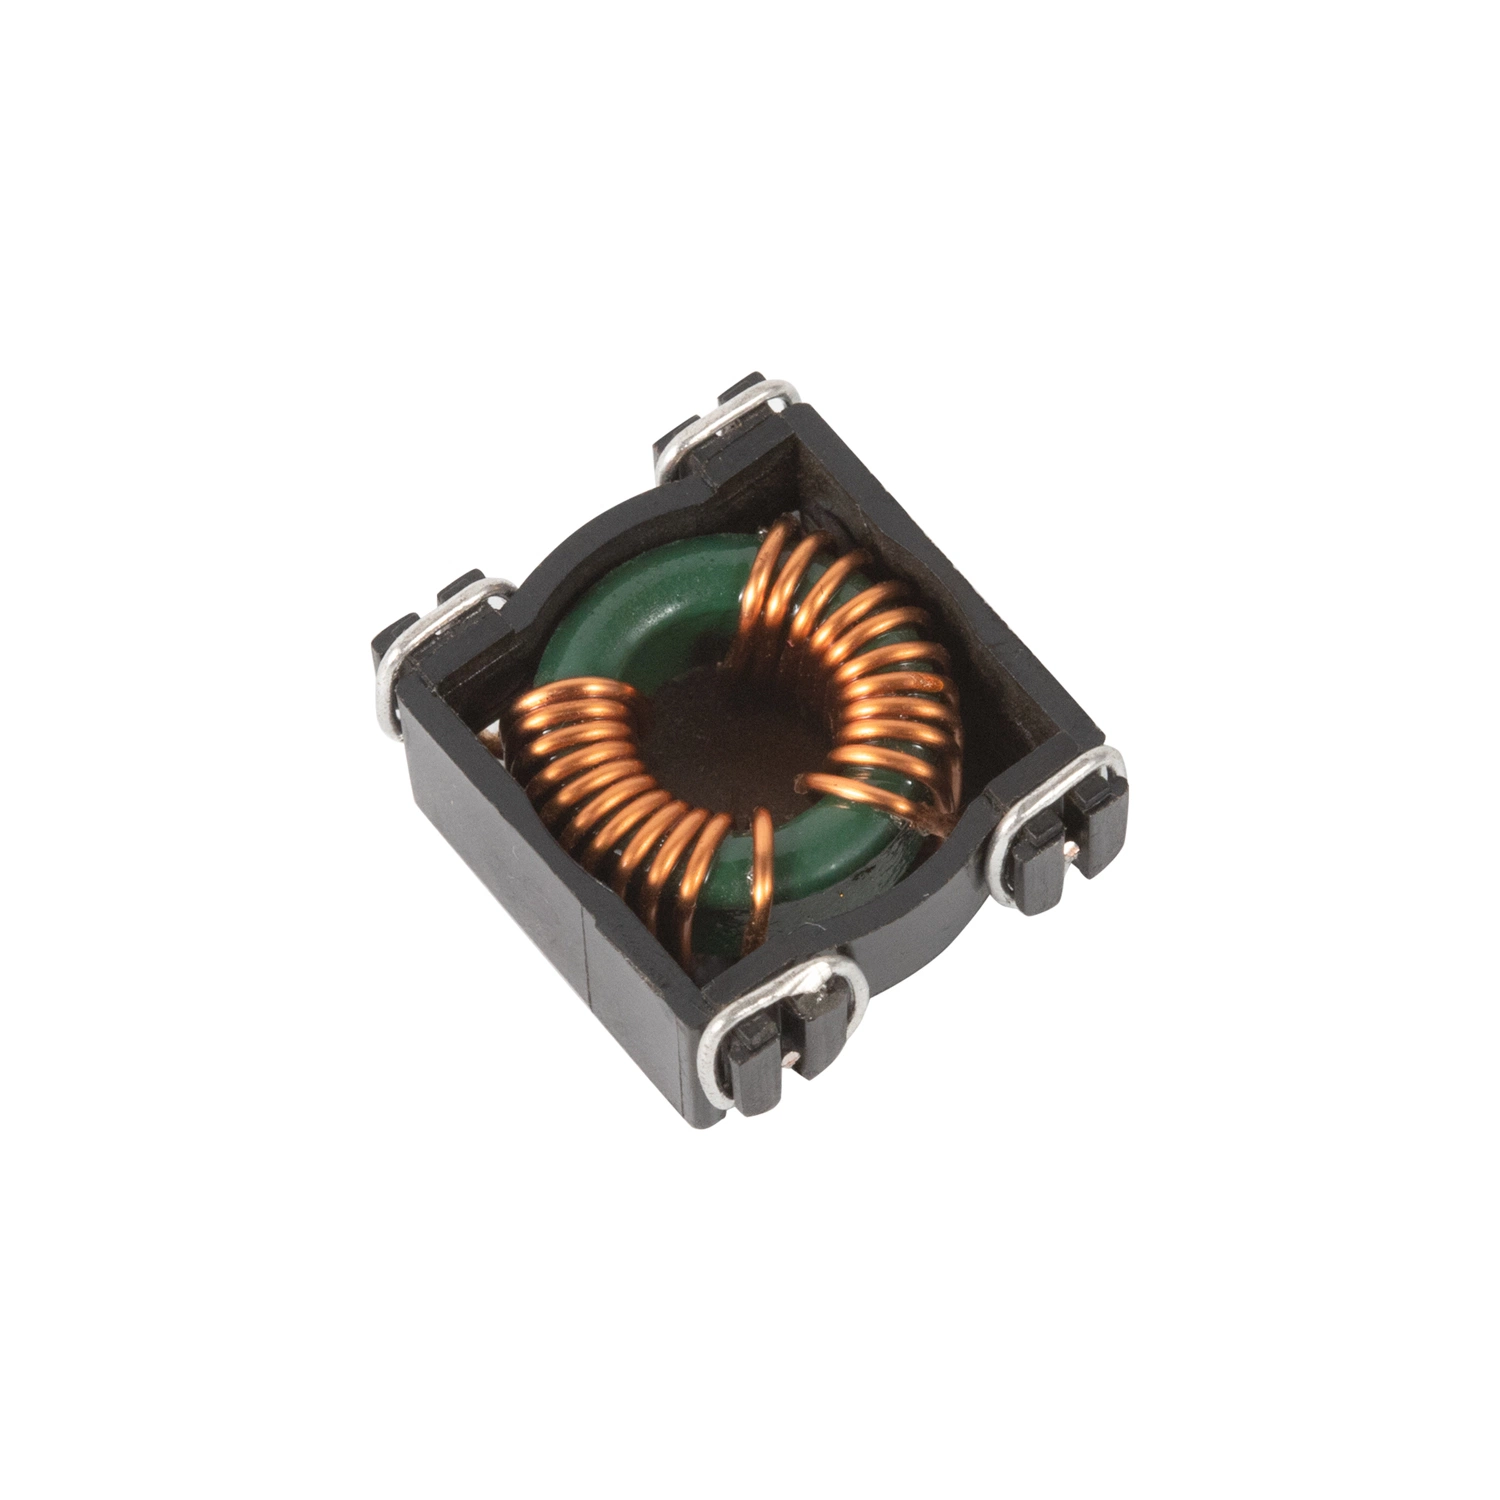 Diseño de muestra gratuita de inductor de SMD estrangulador Modo diferencial de tamaño diferente para la electrónica de consumo de Componentes electromagnéticos Servicio OEM ODM.